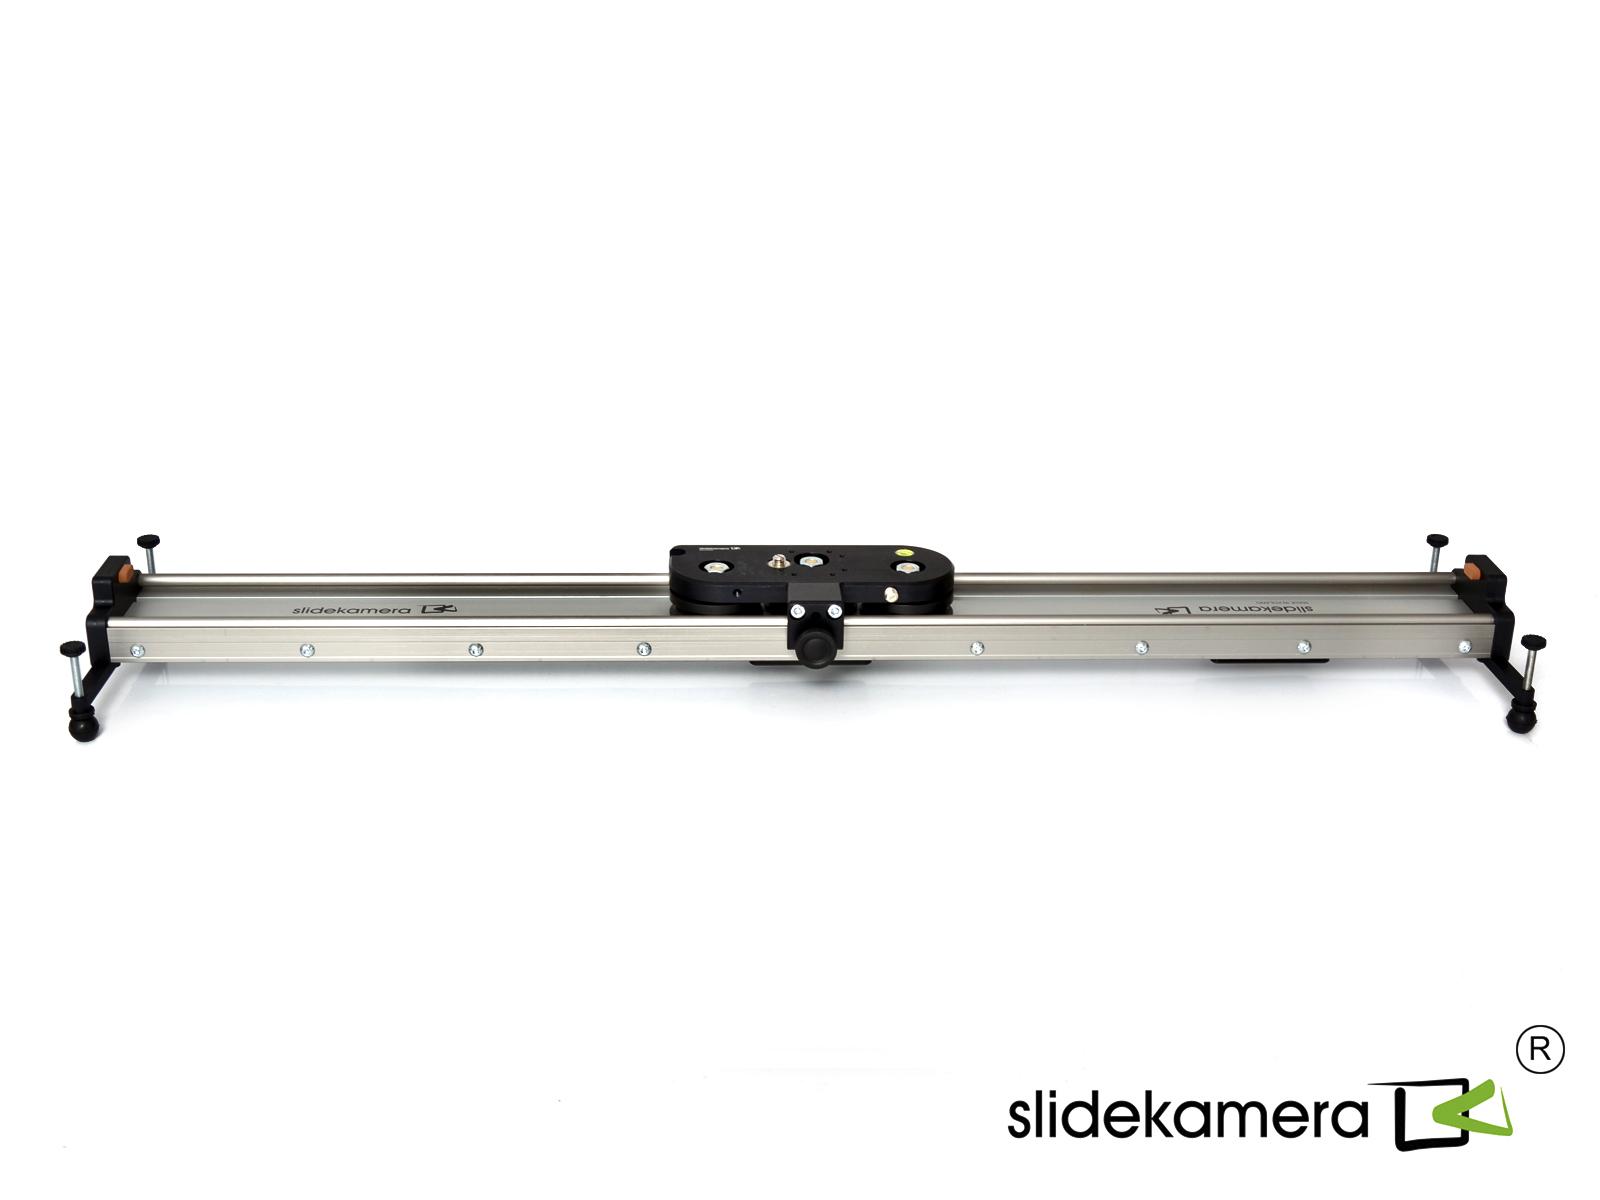  SlideKamera X-SLIDER 2000 BASIC   Ultra-mart